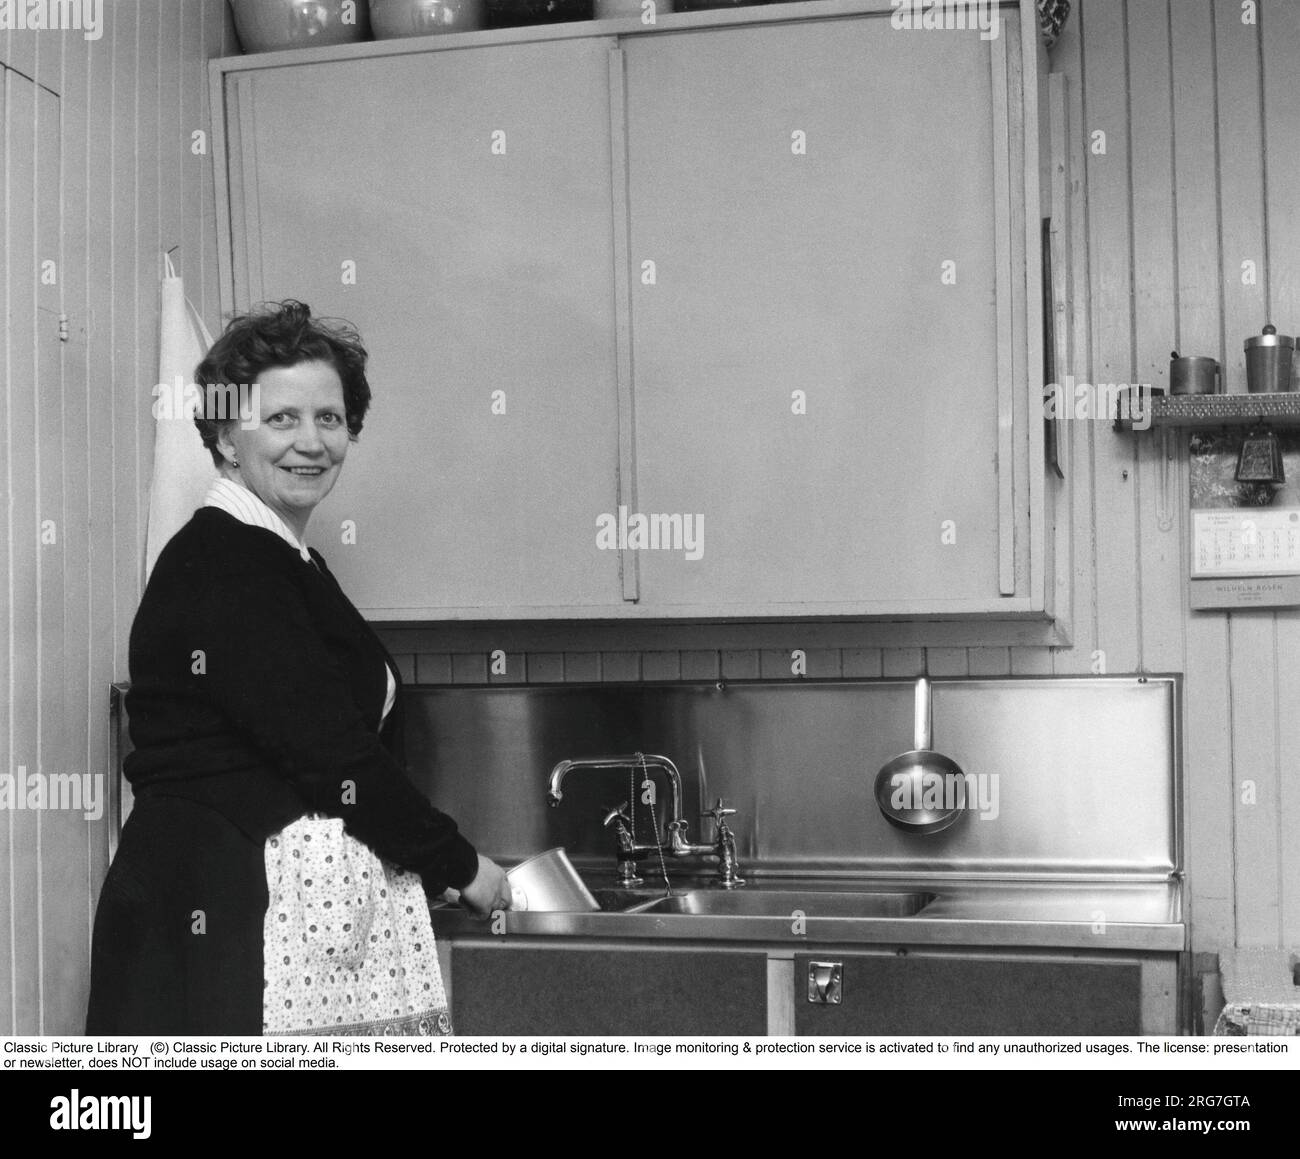 Dans la cuisine 1960s. Intérieur d'une cuisine et une femme nettoyant une casserole dans la cuisine-évier. Suède 1960. Banque D'Images